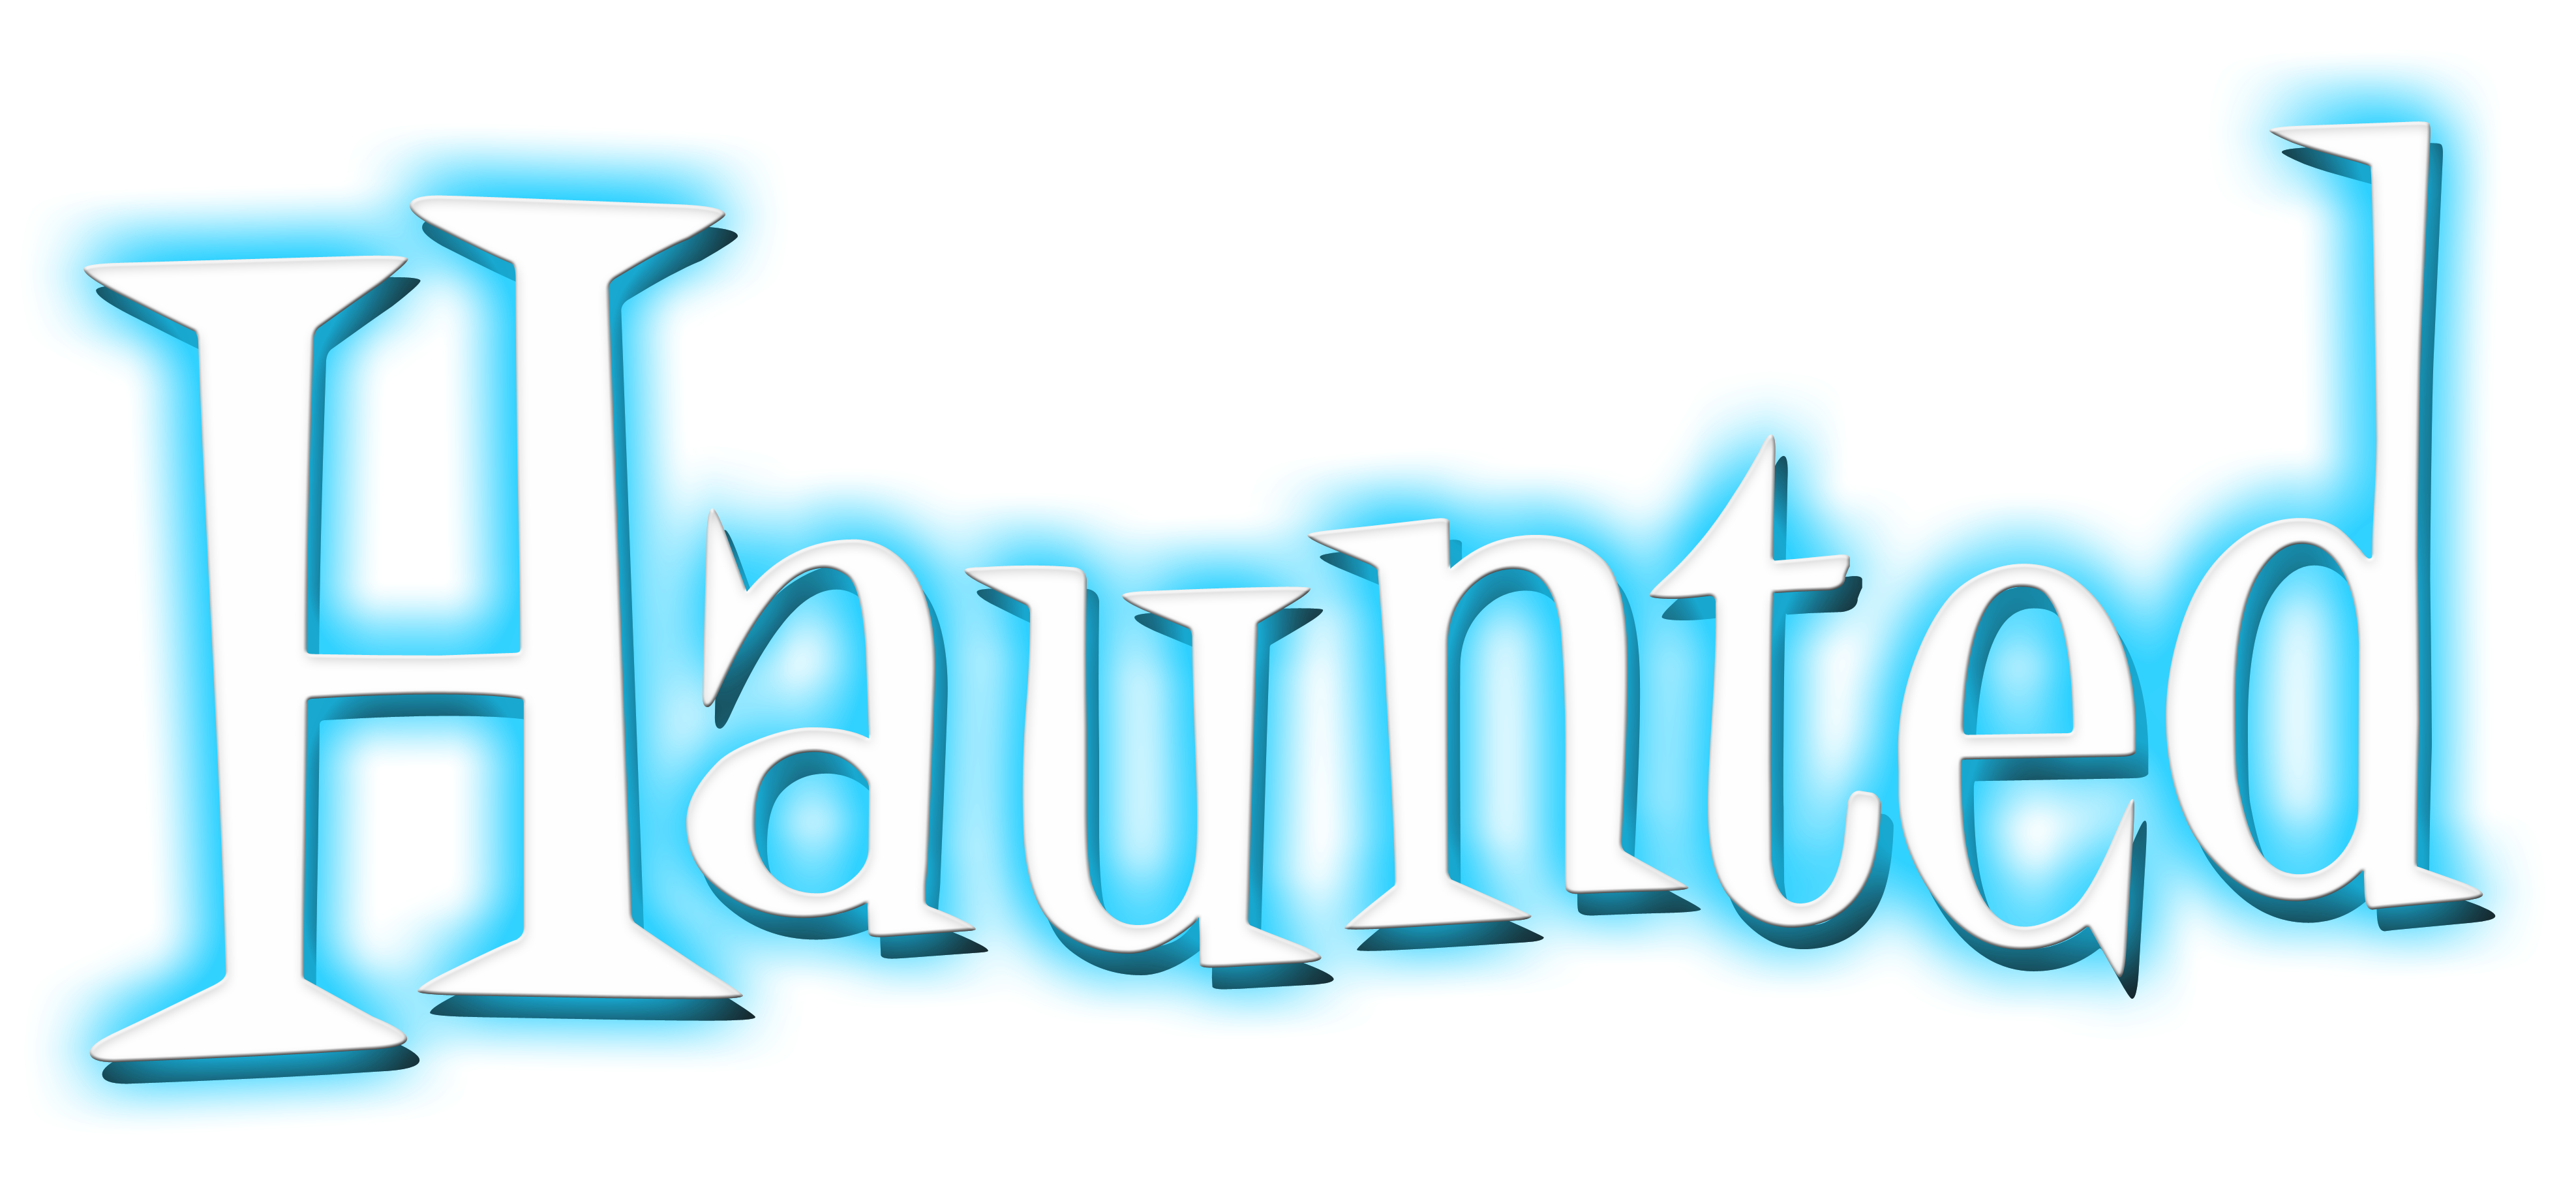 haunted 2012